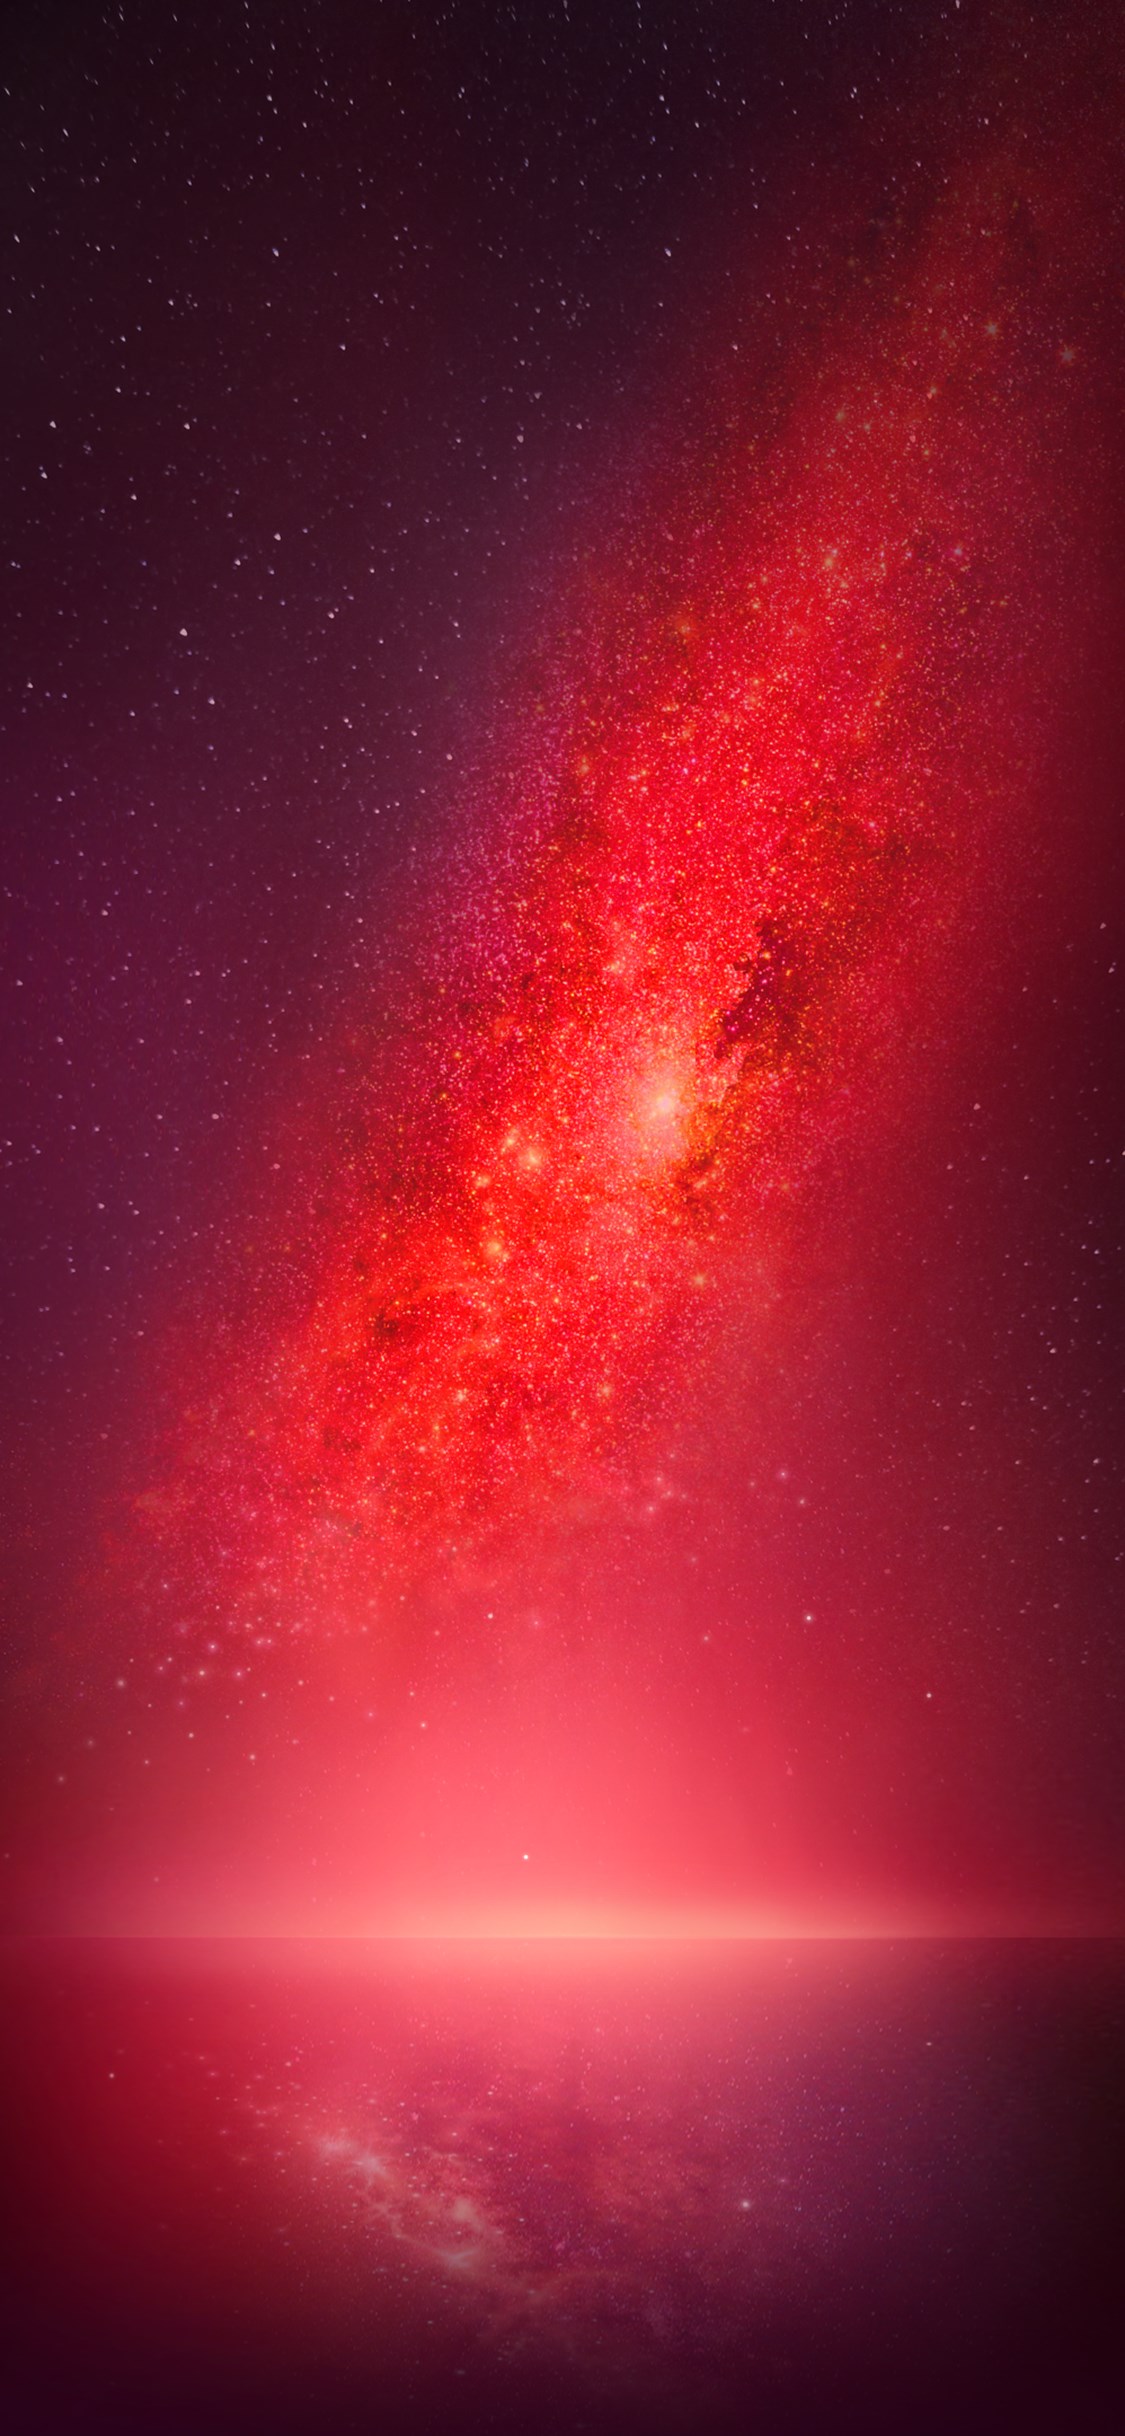 fondos de pantalla fotos hd,rojo,cielo,rosado,atmósfera,objeto astronómico